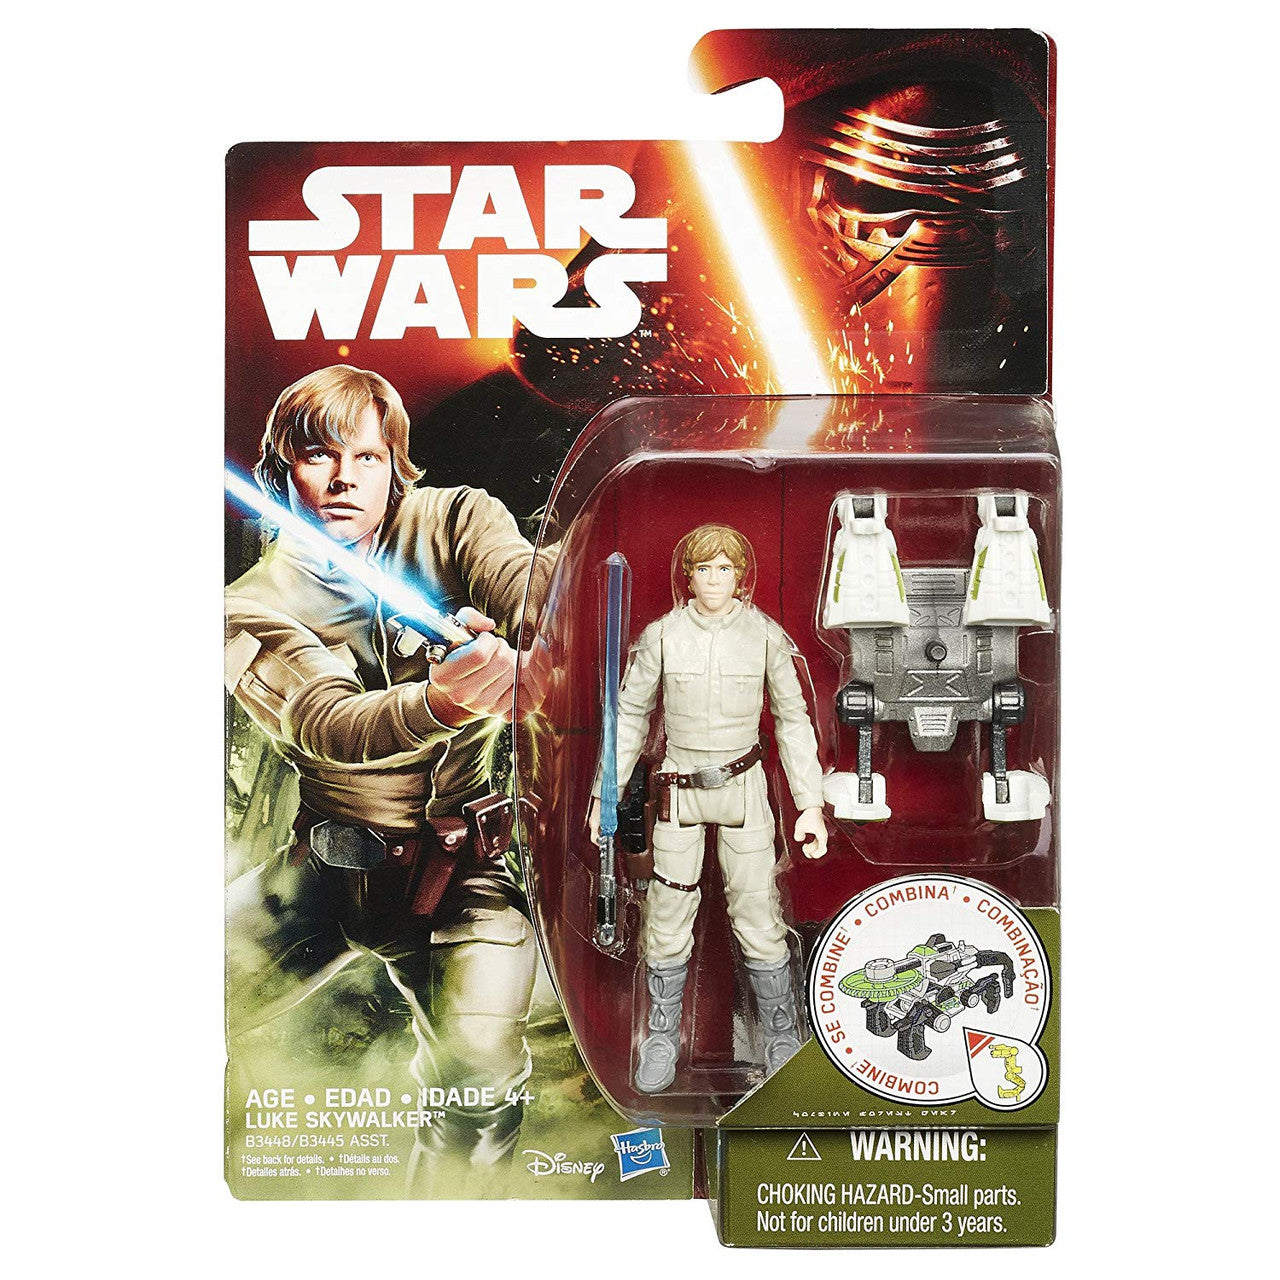 Star Wars The Empire Strikes Back - Luke Skywalker